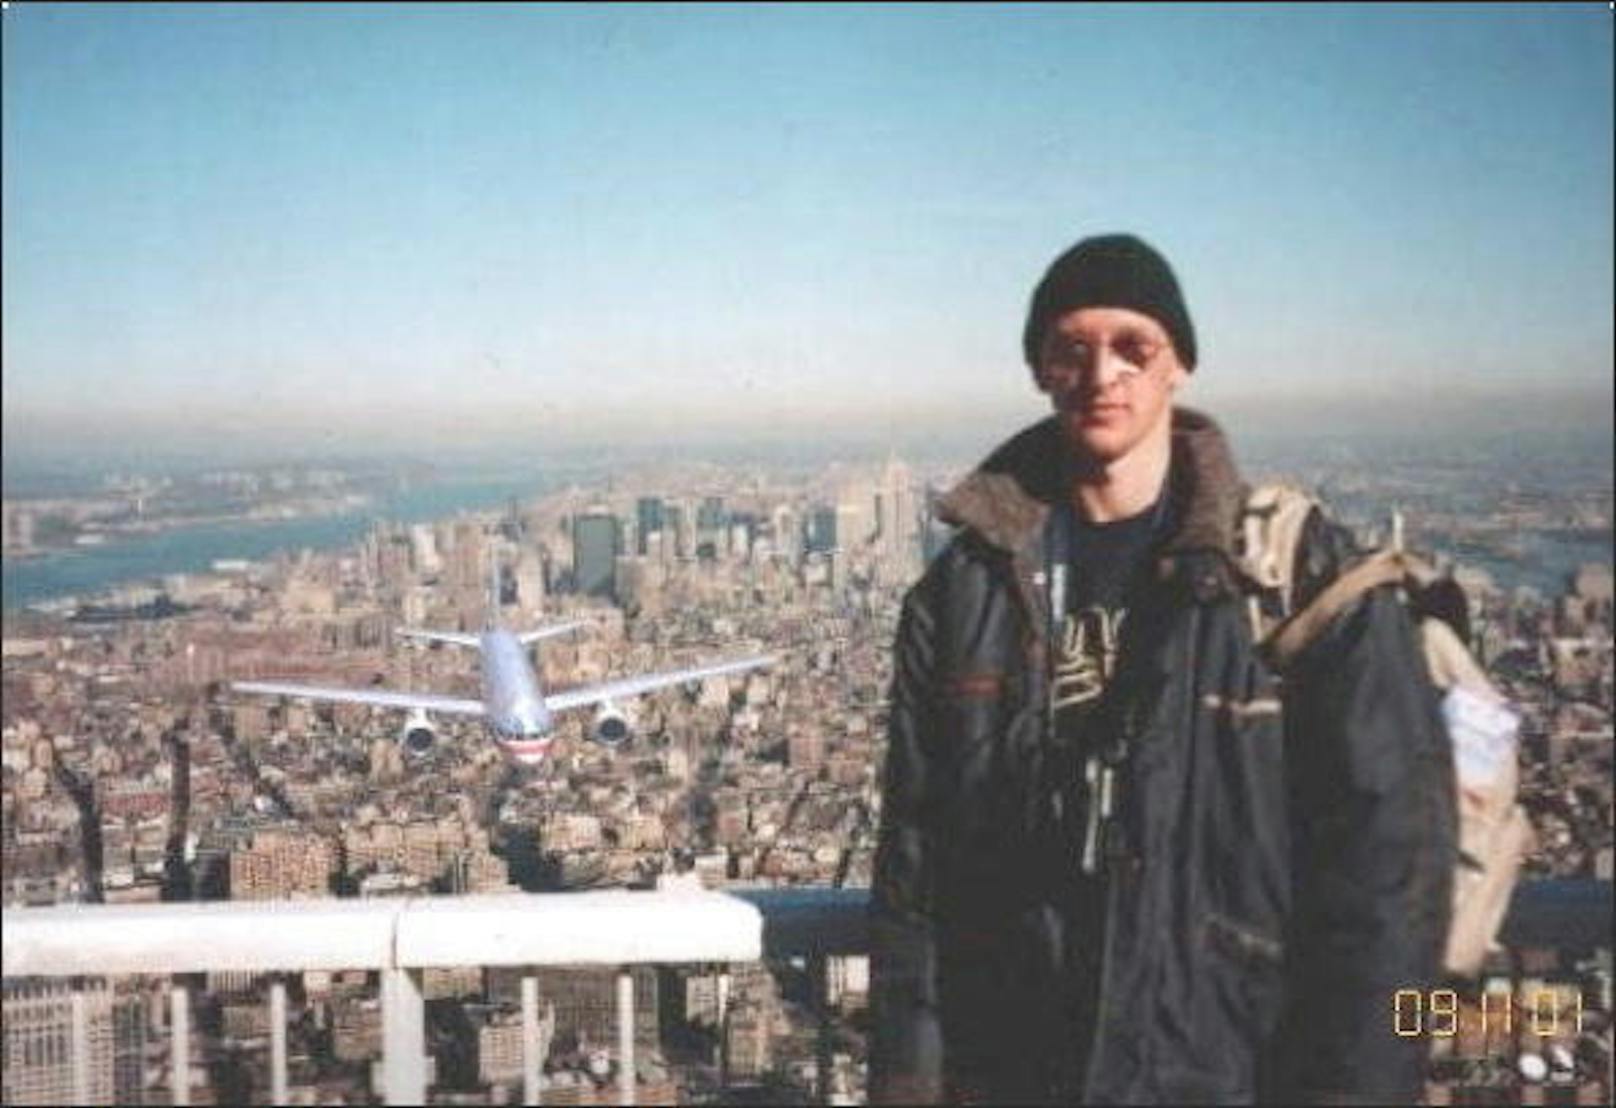 <b>Tourist Guy:</b> Der Tourist Guy ist ein Internetphänomen durch ein gefälschtes Foto. Es geriet nach den Anschlägen von 9/11 auf das World Trade Center in Umlauf und zeigt einen Touristen, der auf dem Observationsdeck des Gebäudes steht. Im Hintergrund nähert sich eines der Flugzeuge, das in den Gebäuden einschlug.